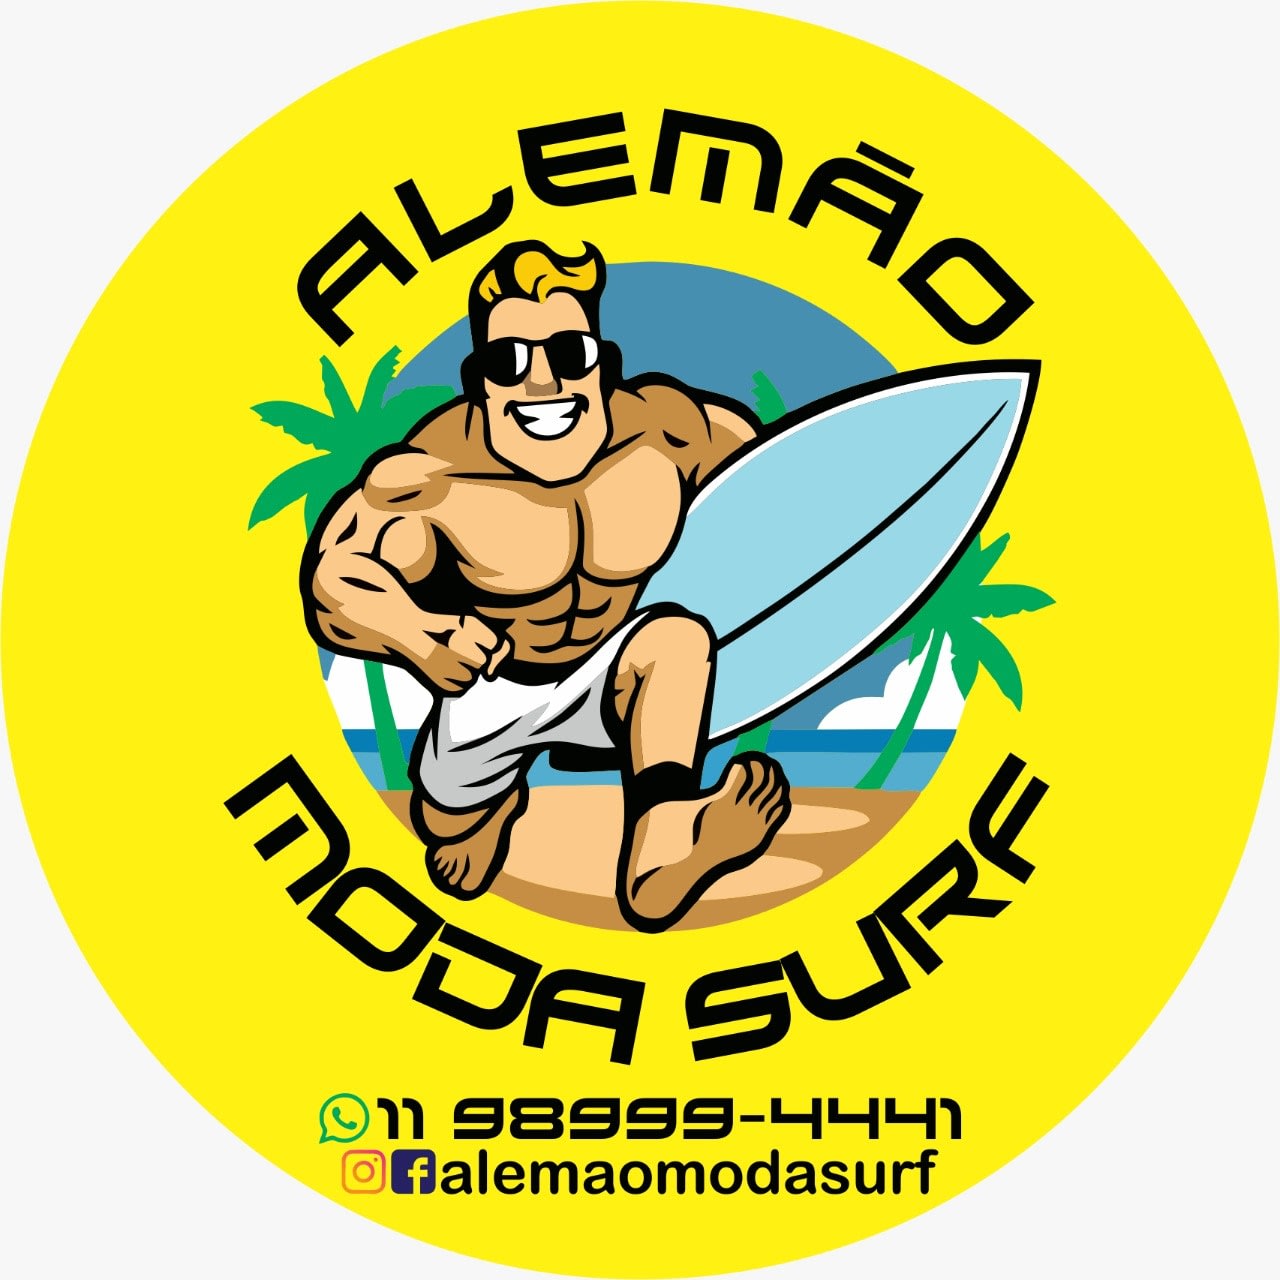 Alemão Moda Surf